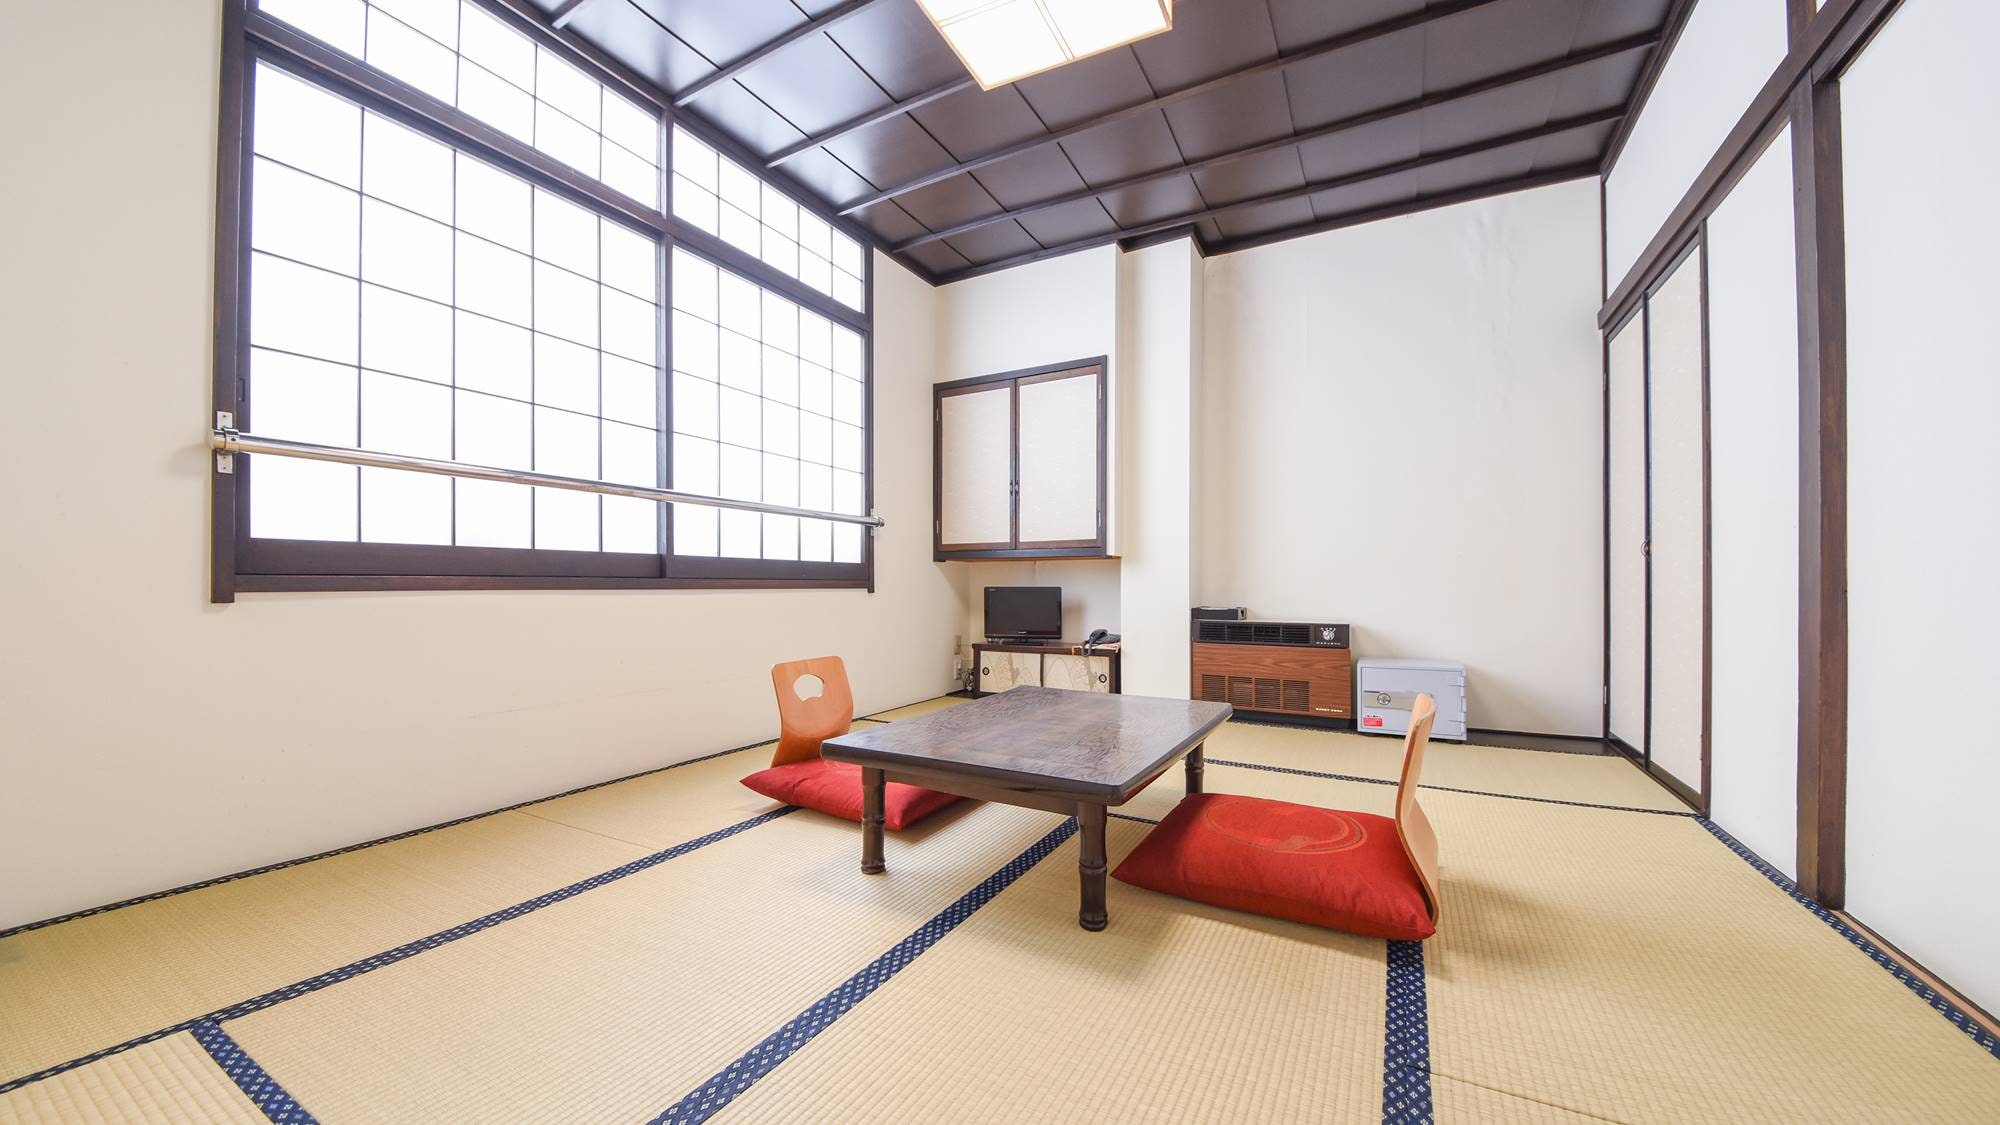 * ห้องสไตล์ญี่ปุ่น 10 เสื่อทาทามิ (ตัวอย่างห้องพัก) / กรุณาพักผ่อนในห้องสไตล์ญี่ปุ่นที่มีบรรยากาศชื้นและสงบ